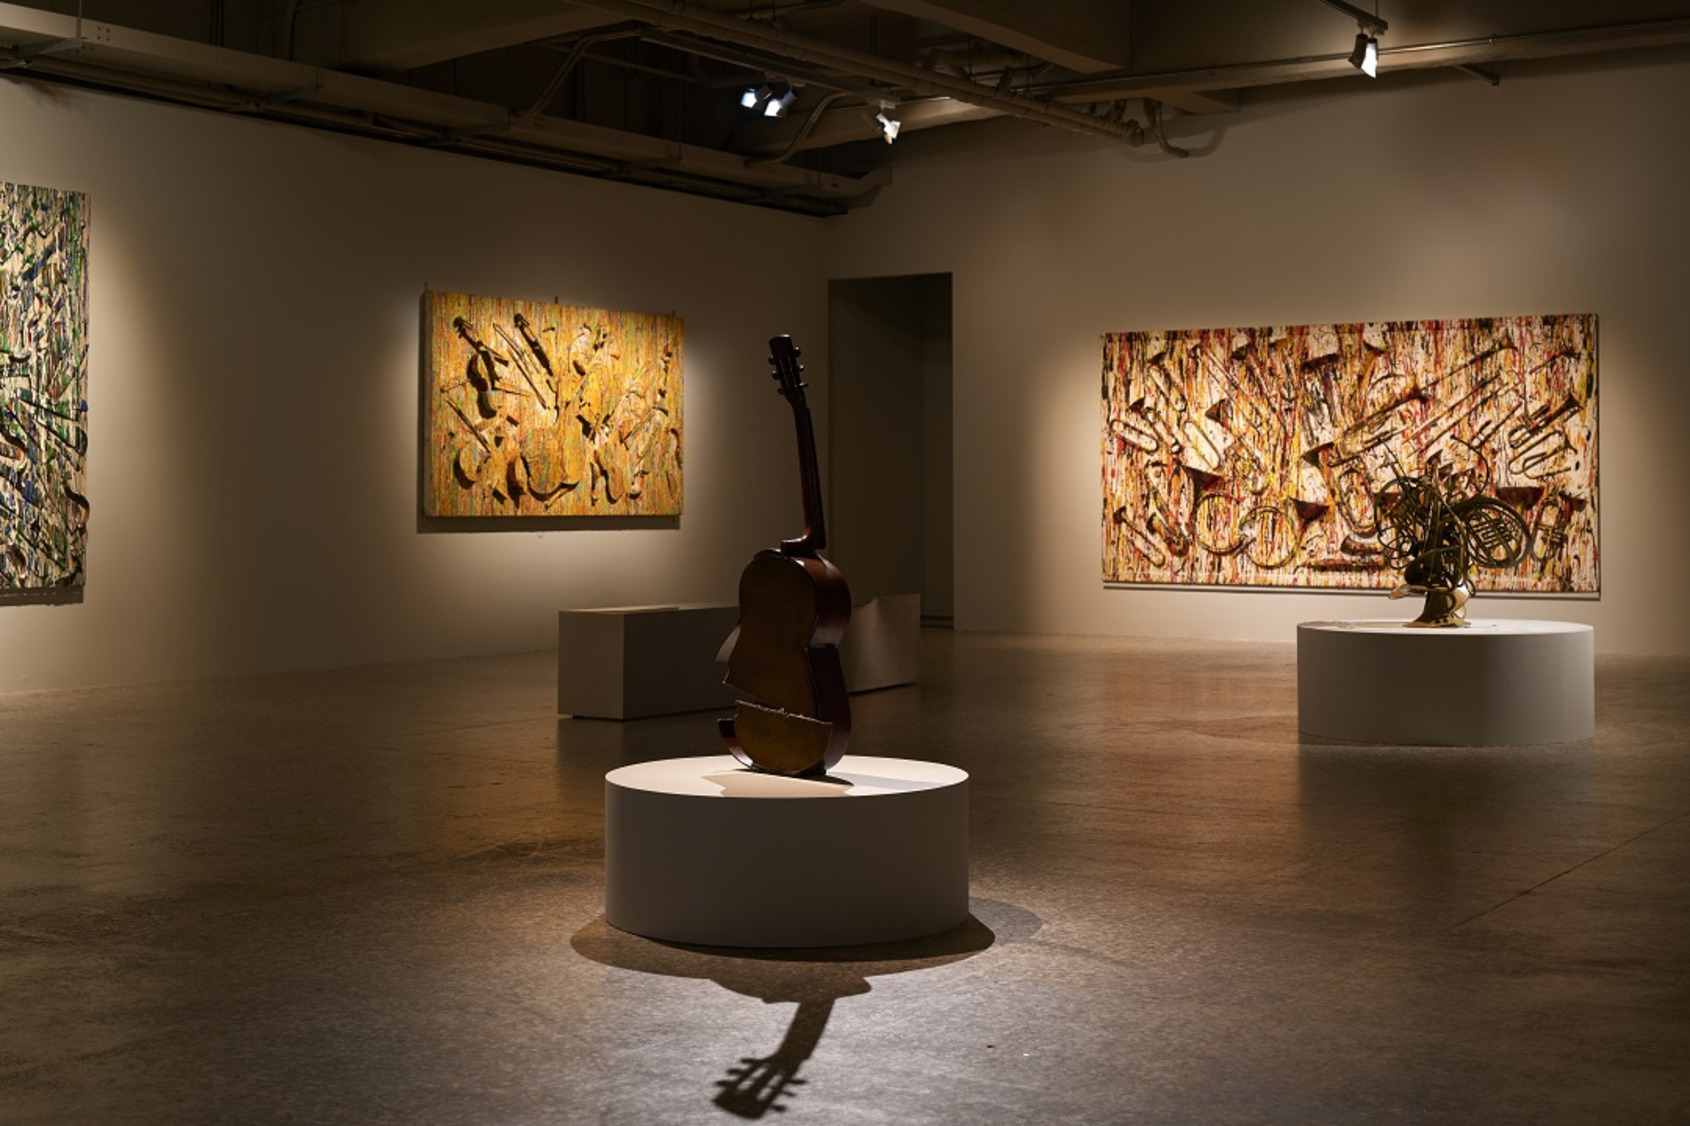  藝術家阿曼以樂器作為媒材，展現其切割、破壞、燃燒、重組的創作型態，永添藝術金馬賓館當代美術館展場畫面。©ALIEN Art